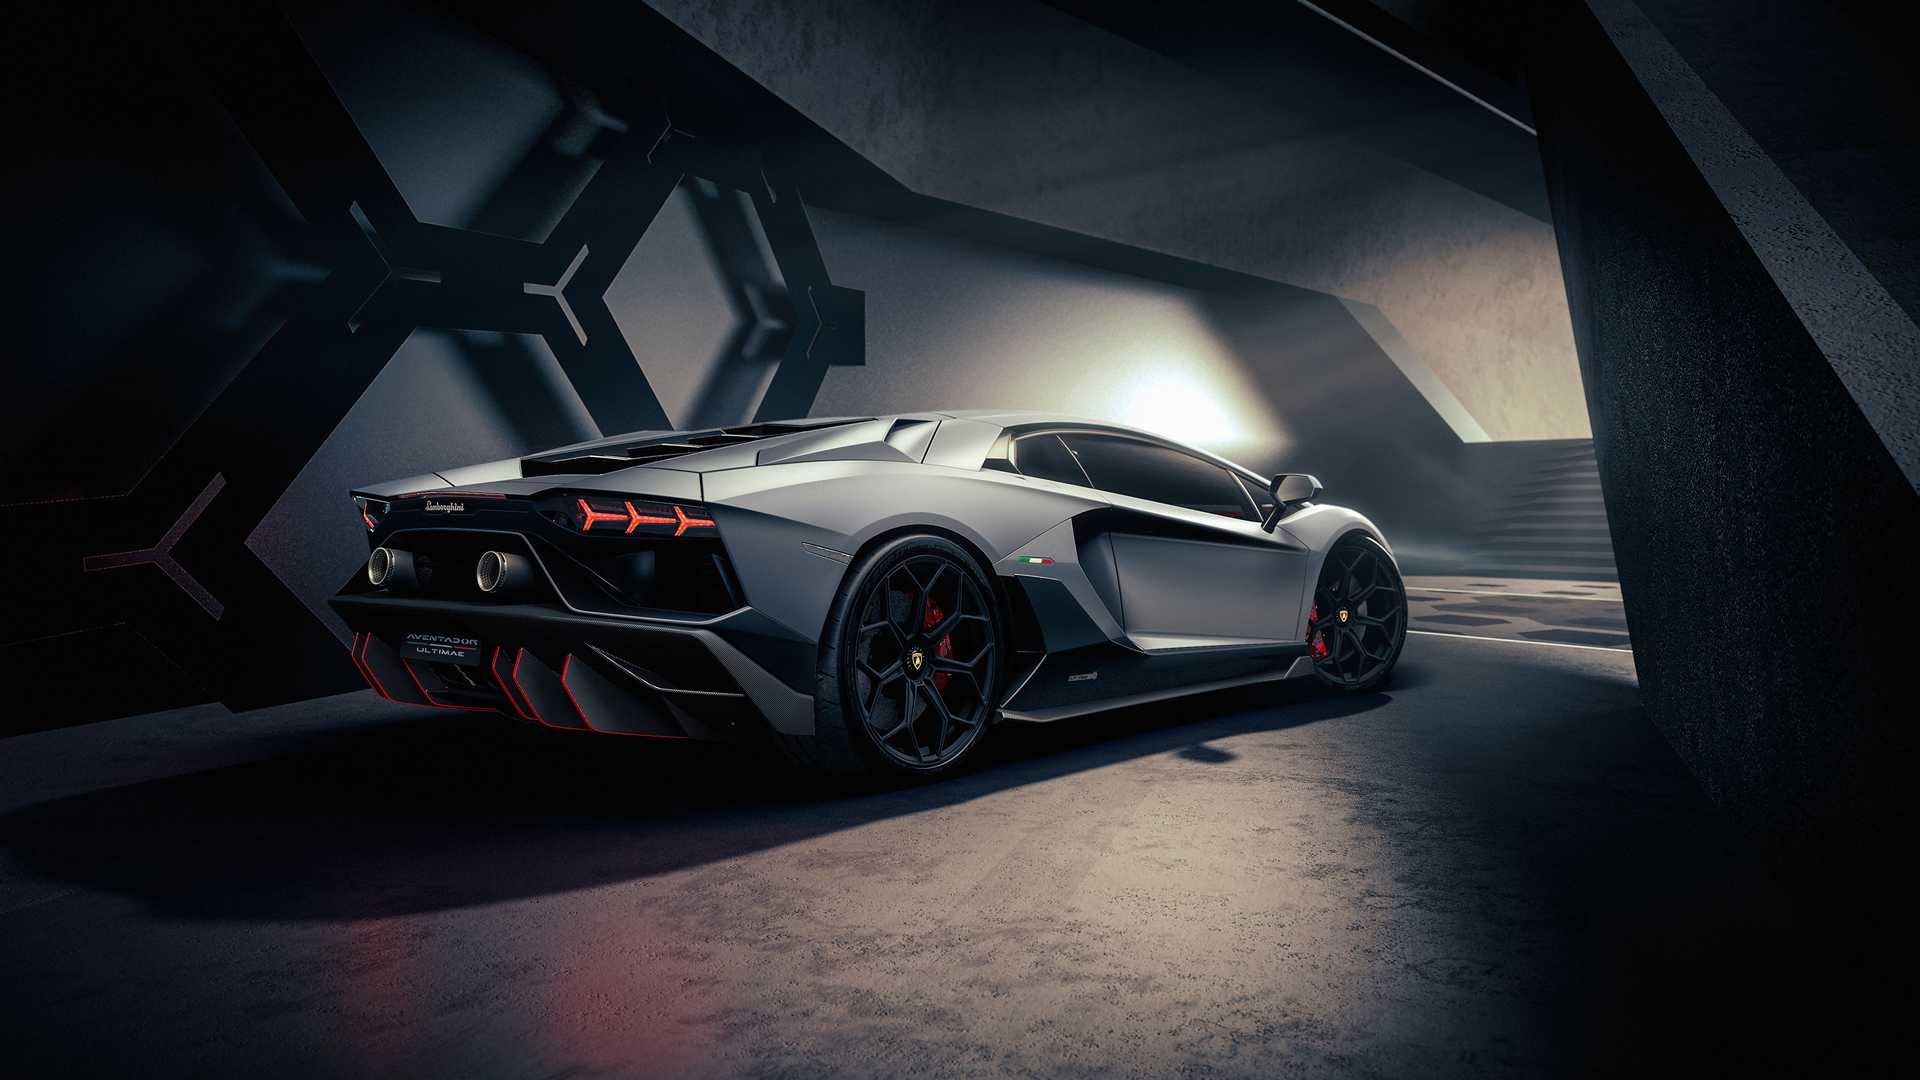 Ngắm nhìn chiếc Lamborghini Aventador đầy uy lực, thể hiện sự tinh tế và hoàn hảo trong từng chi tiết thiết kế. Cùng đắm mình vào những hình ảnh lung linh, vô cùng quyến rũ và mạnh mẽ về siêu xe Lamborghini Aventador.